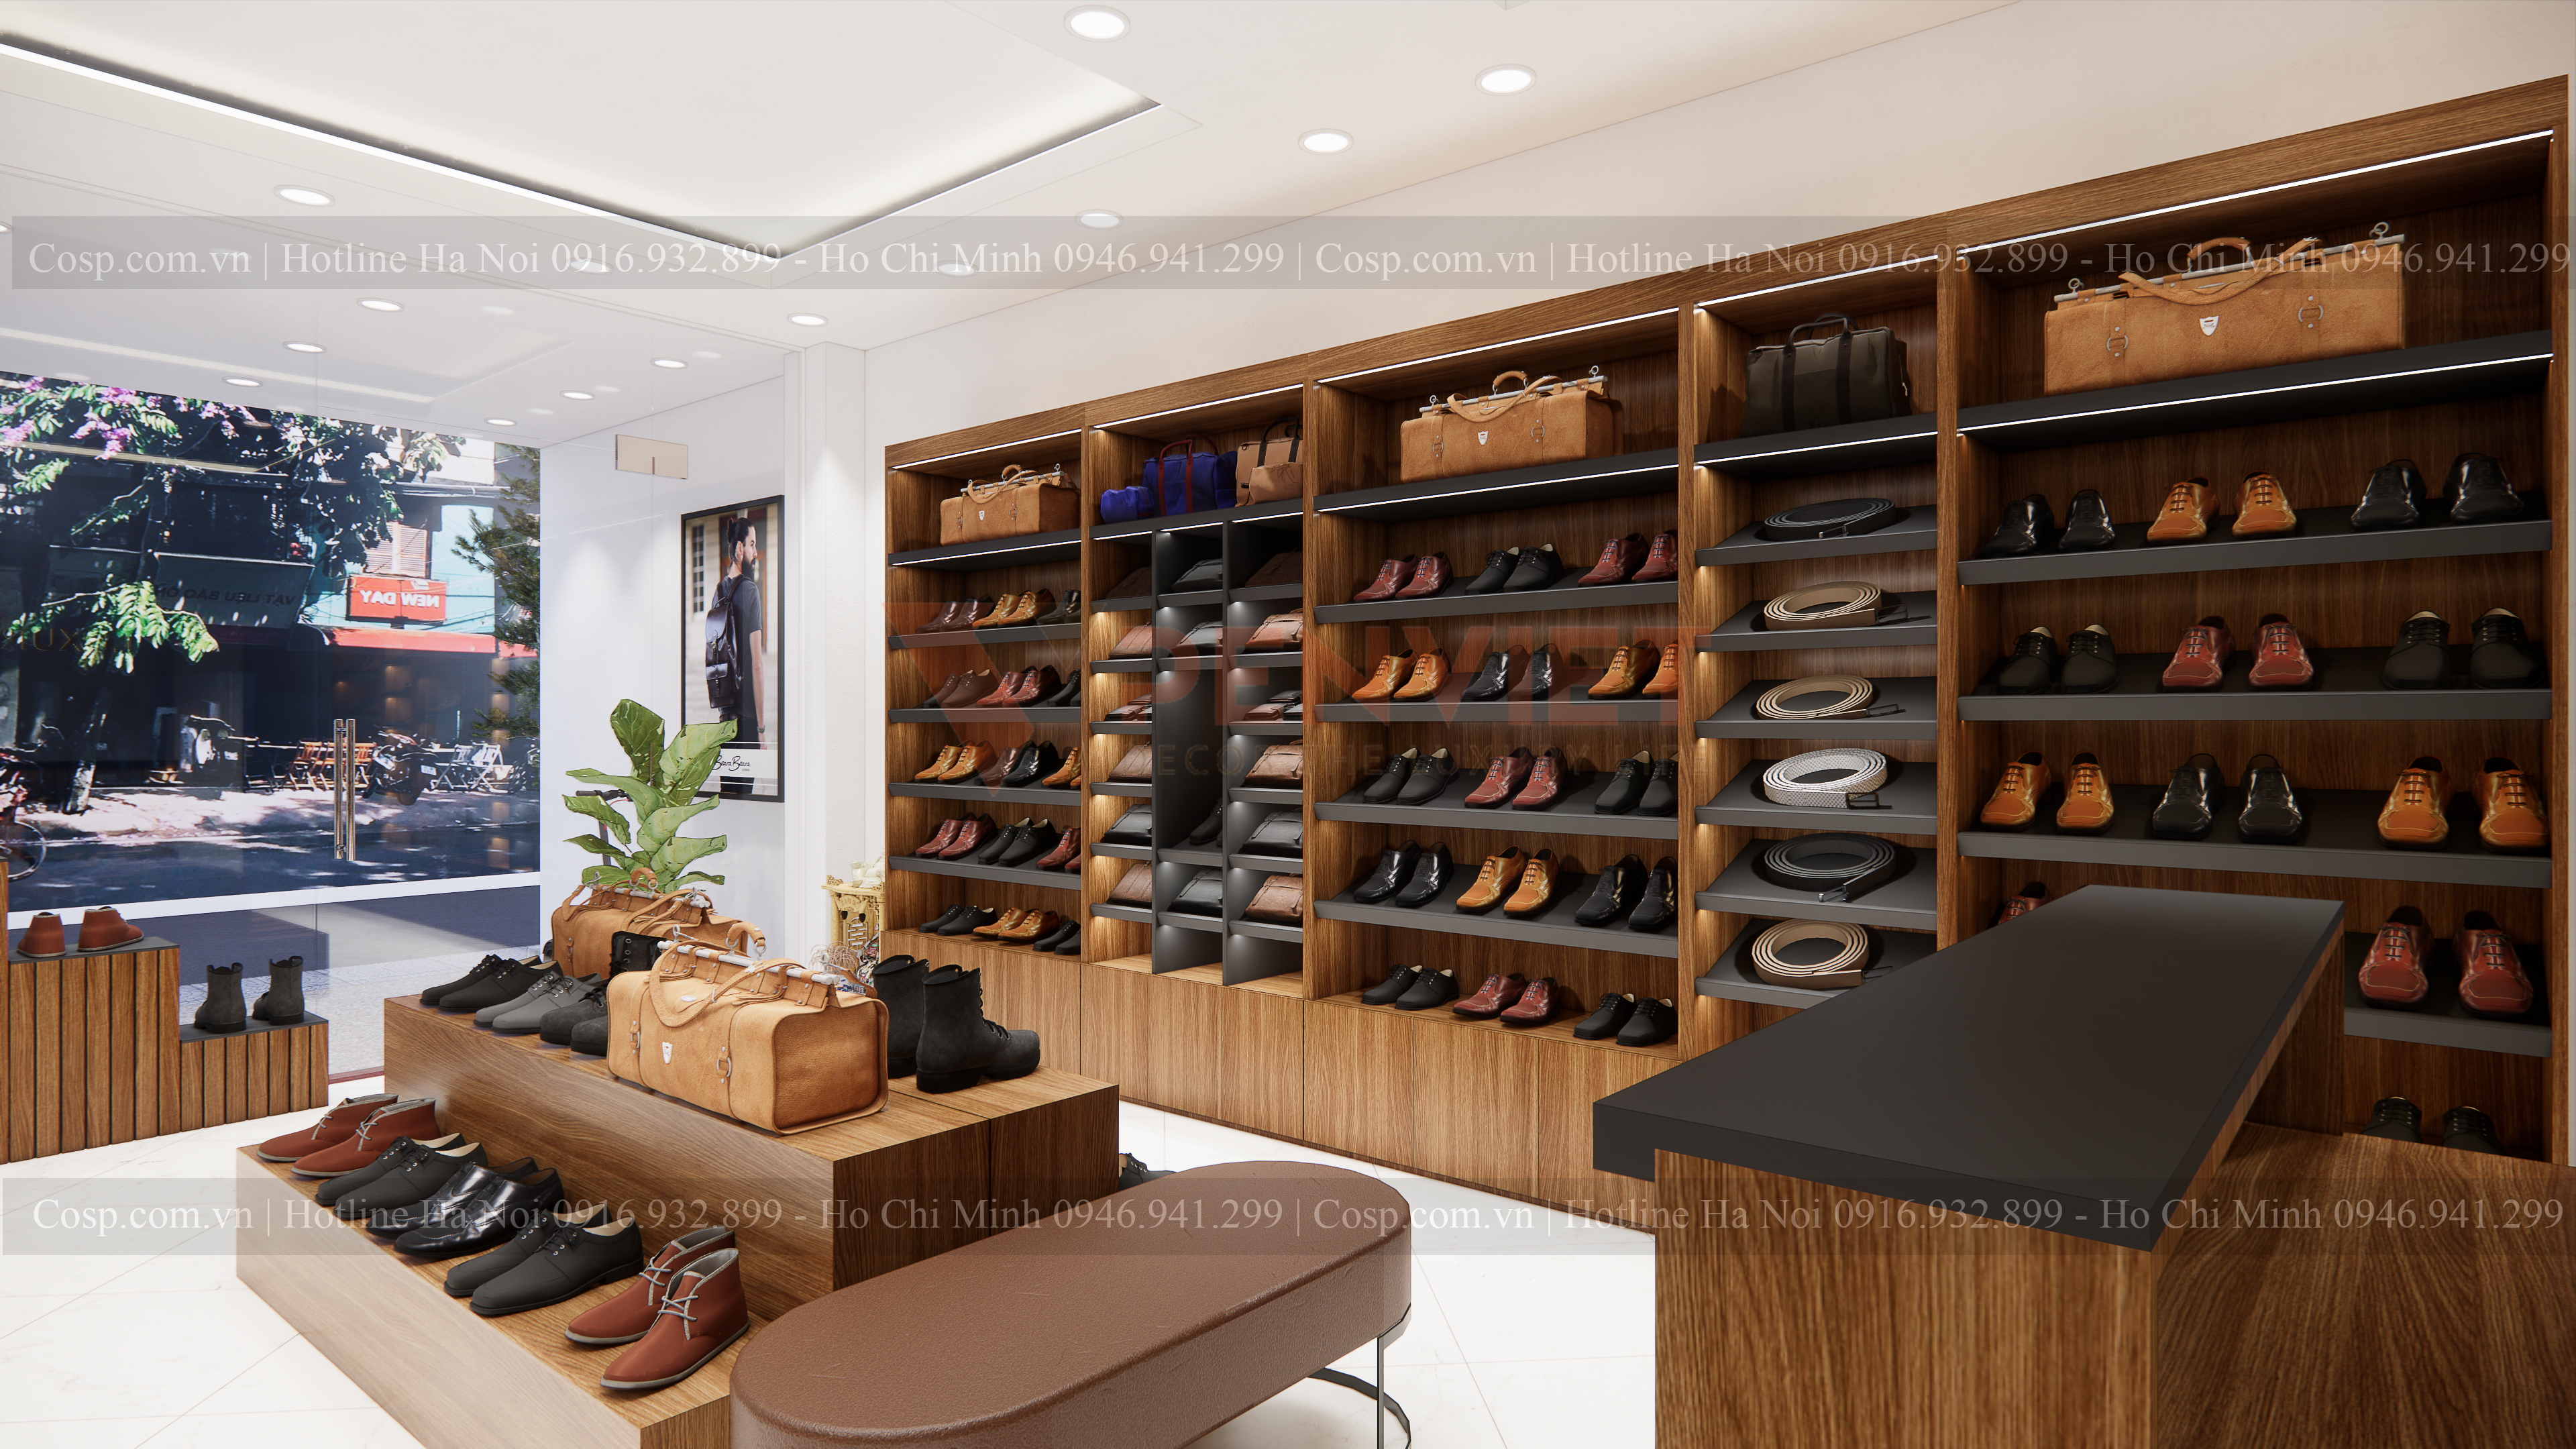 Thiết kế shop giày da Luxury Brand